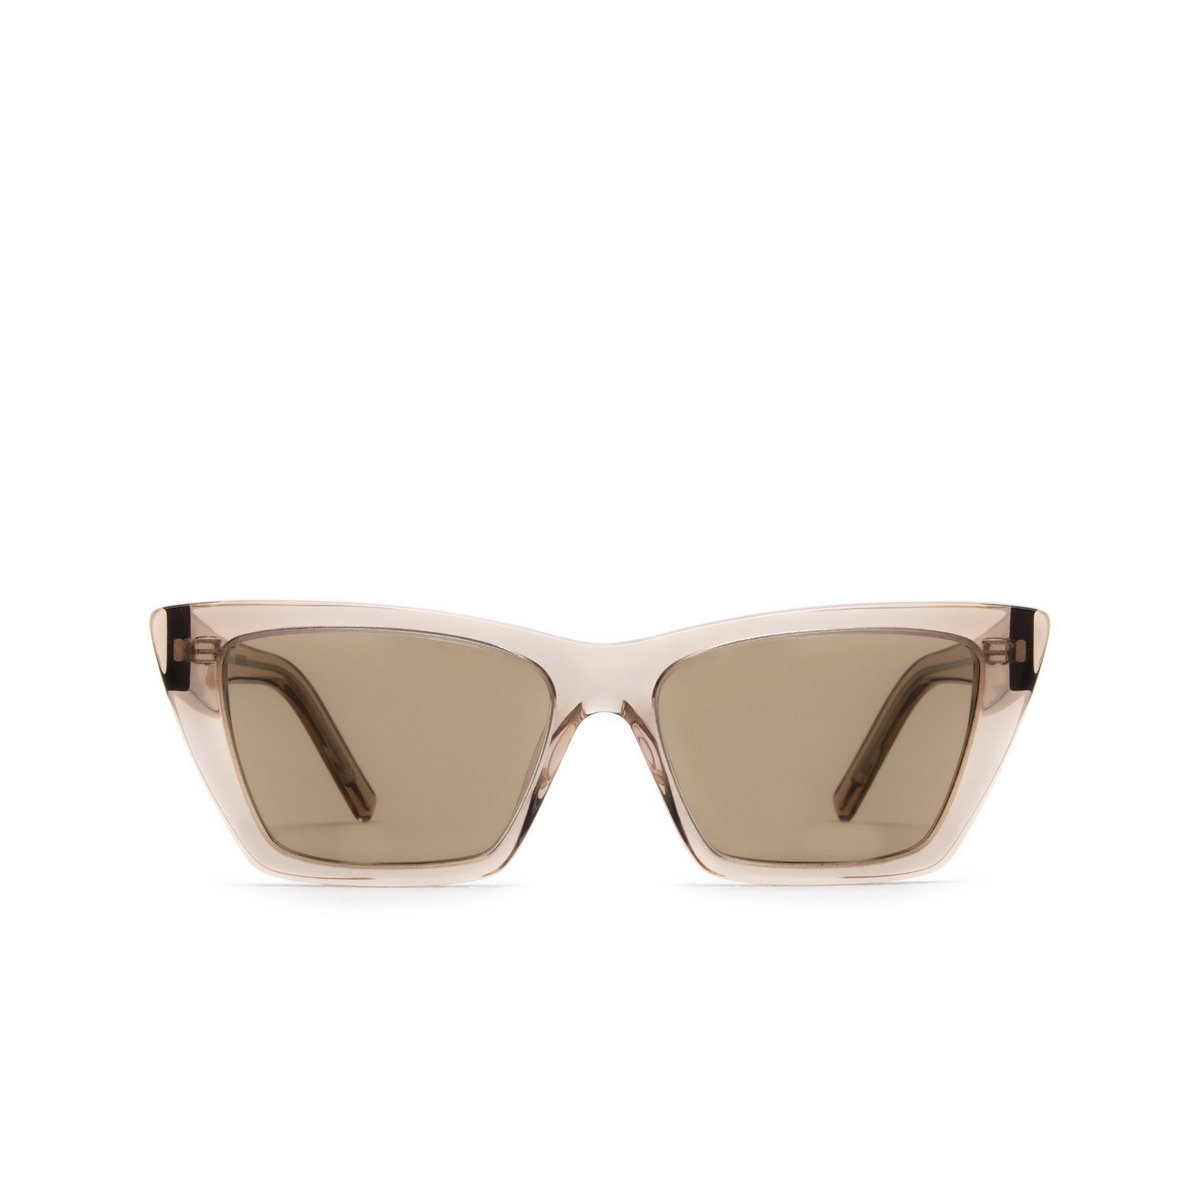 Saint Laurent® Cat-eye Sunglasses: Mica SL 276 color Pink 029 - front view.